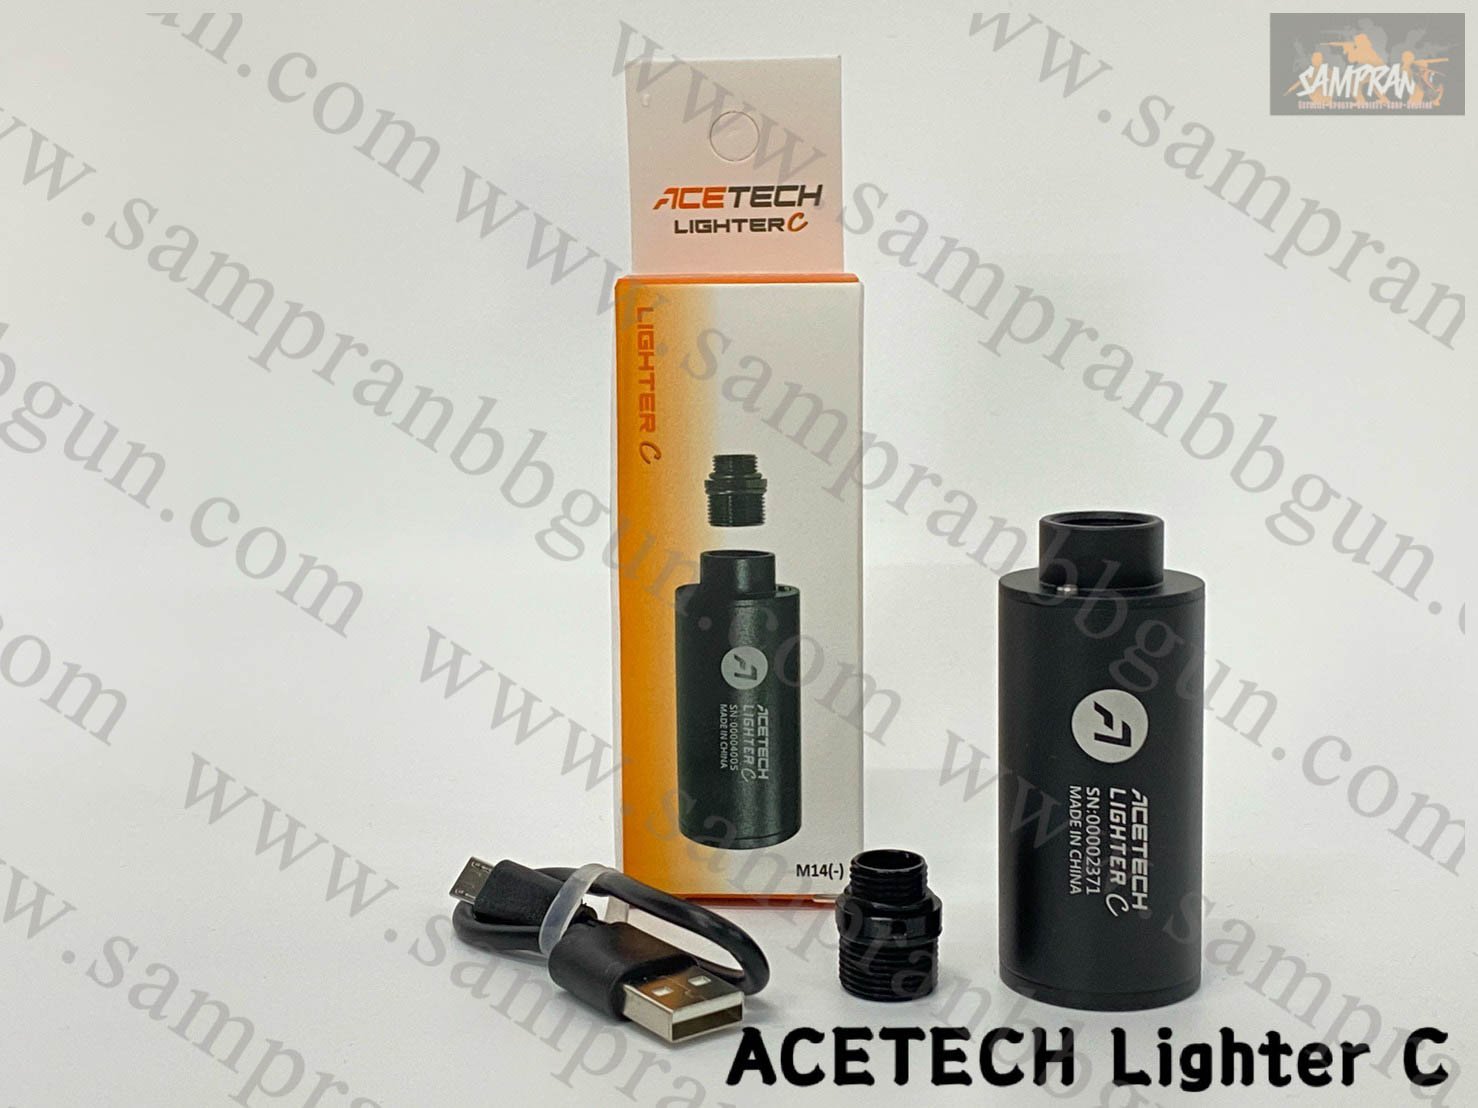 Acetech Lighter C Pistol Tracer Unit